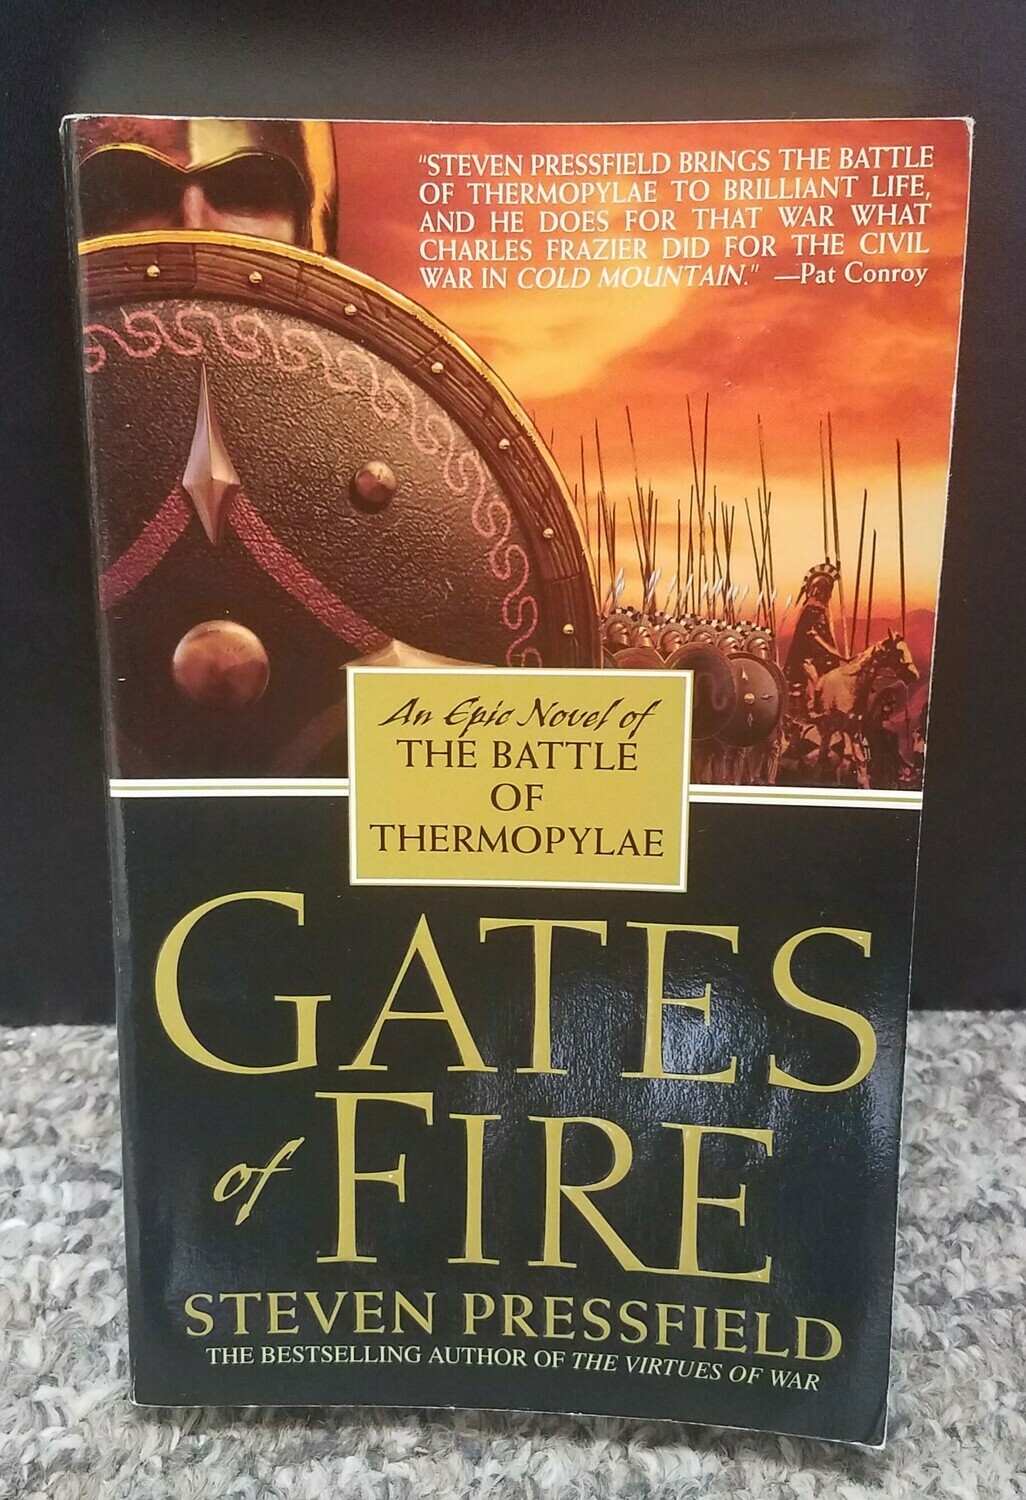 Gates of Fire by Steven Pressfield